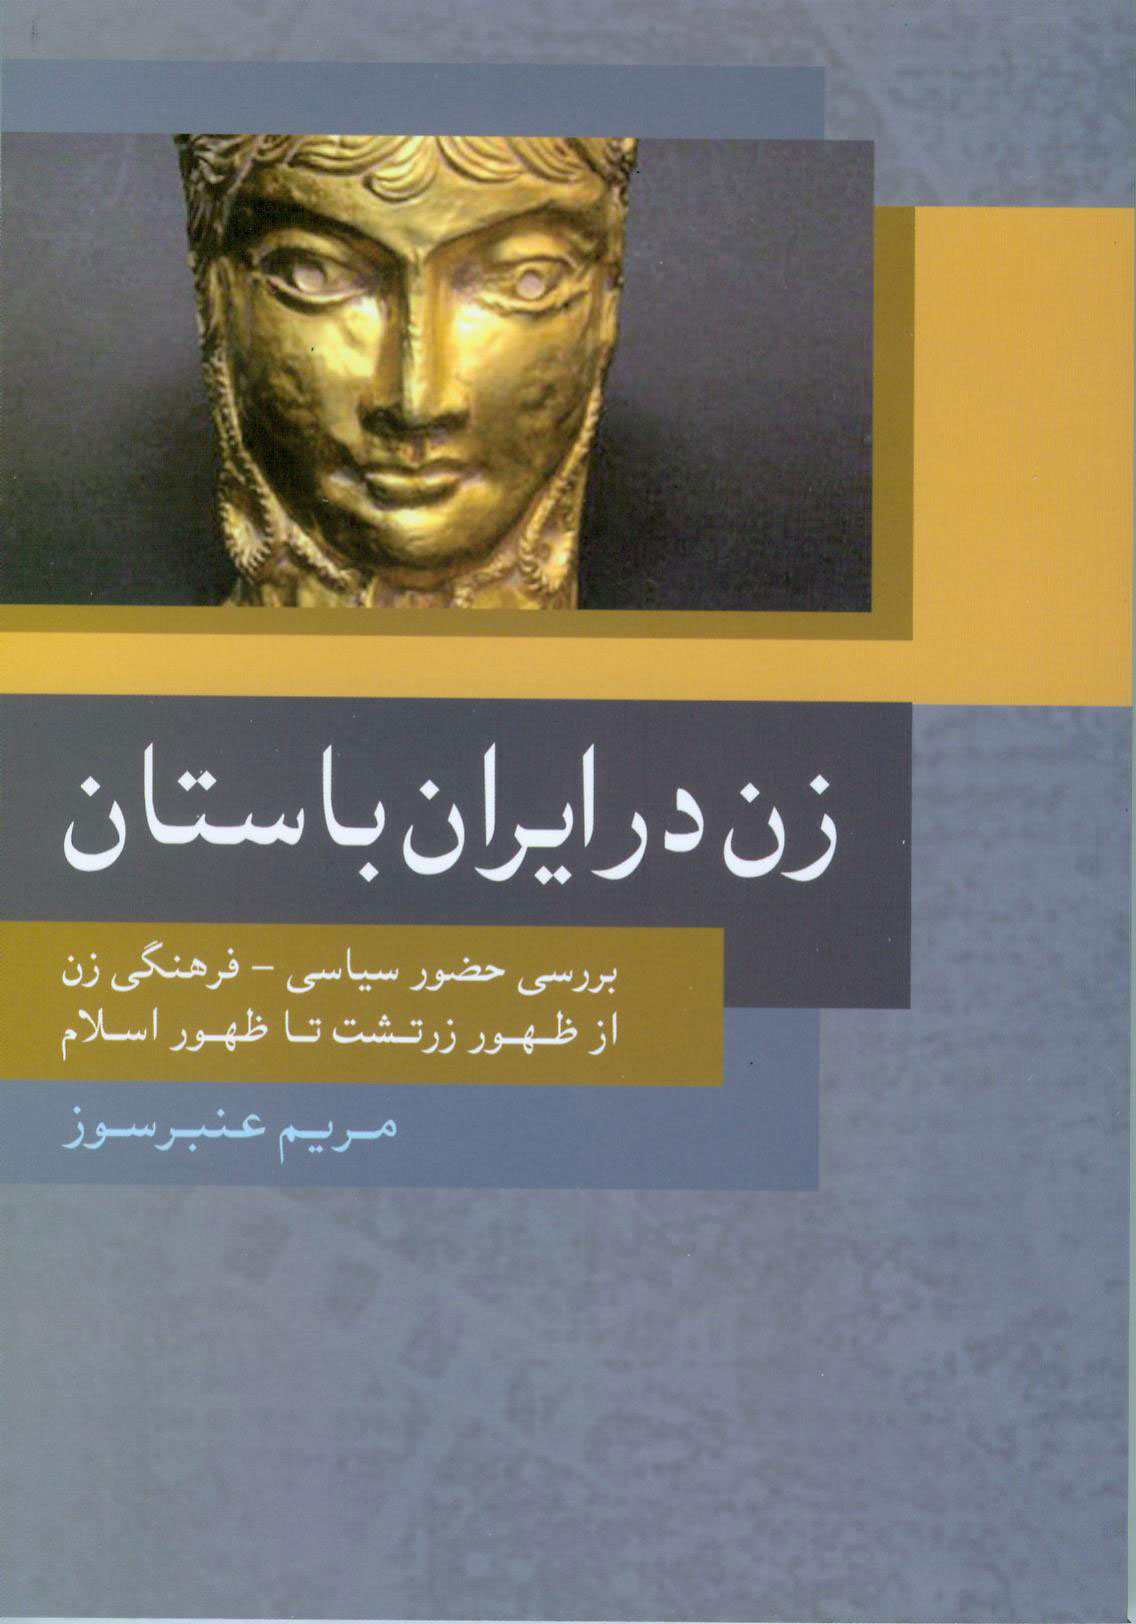 نمایش زن در ایران باستان